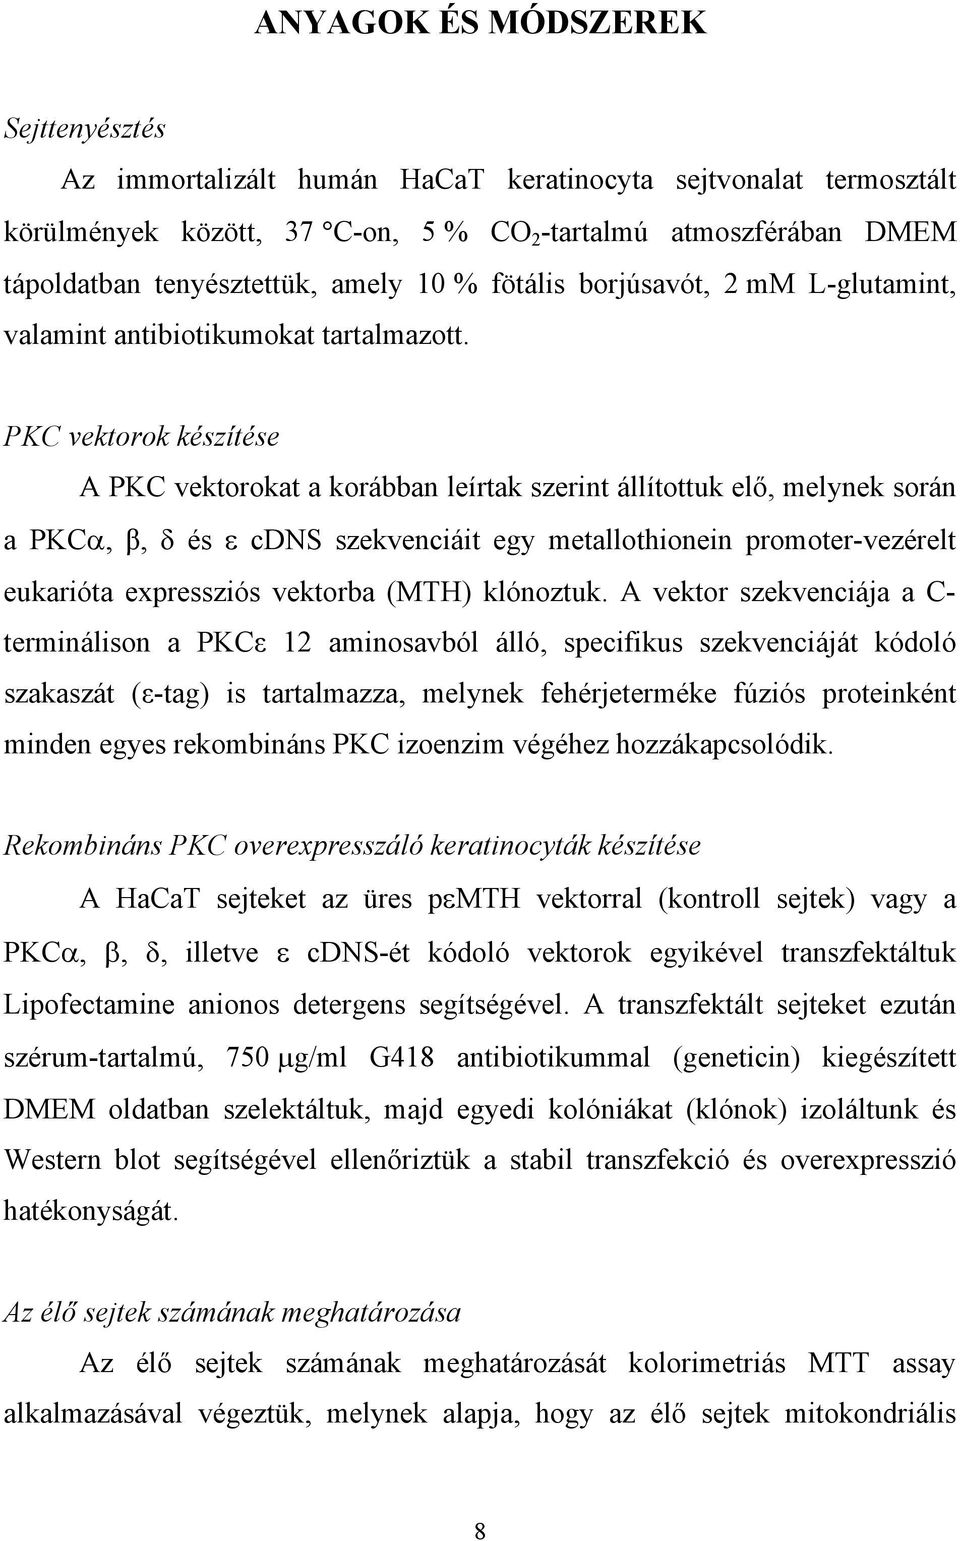 PKC vektorok készítése A PKC vektorokat a korábban leírtak szerint állítottuk el, melynek során a PKC,, és cdns szekvenciáit egy metallothionein promoter-vezérelt eukarióta expressziós vektorba (MTH)